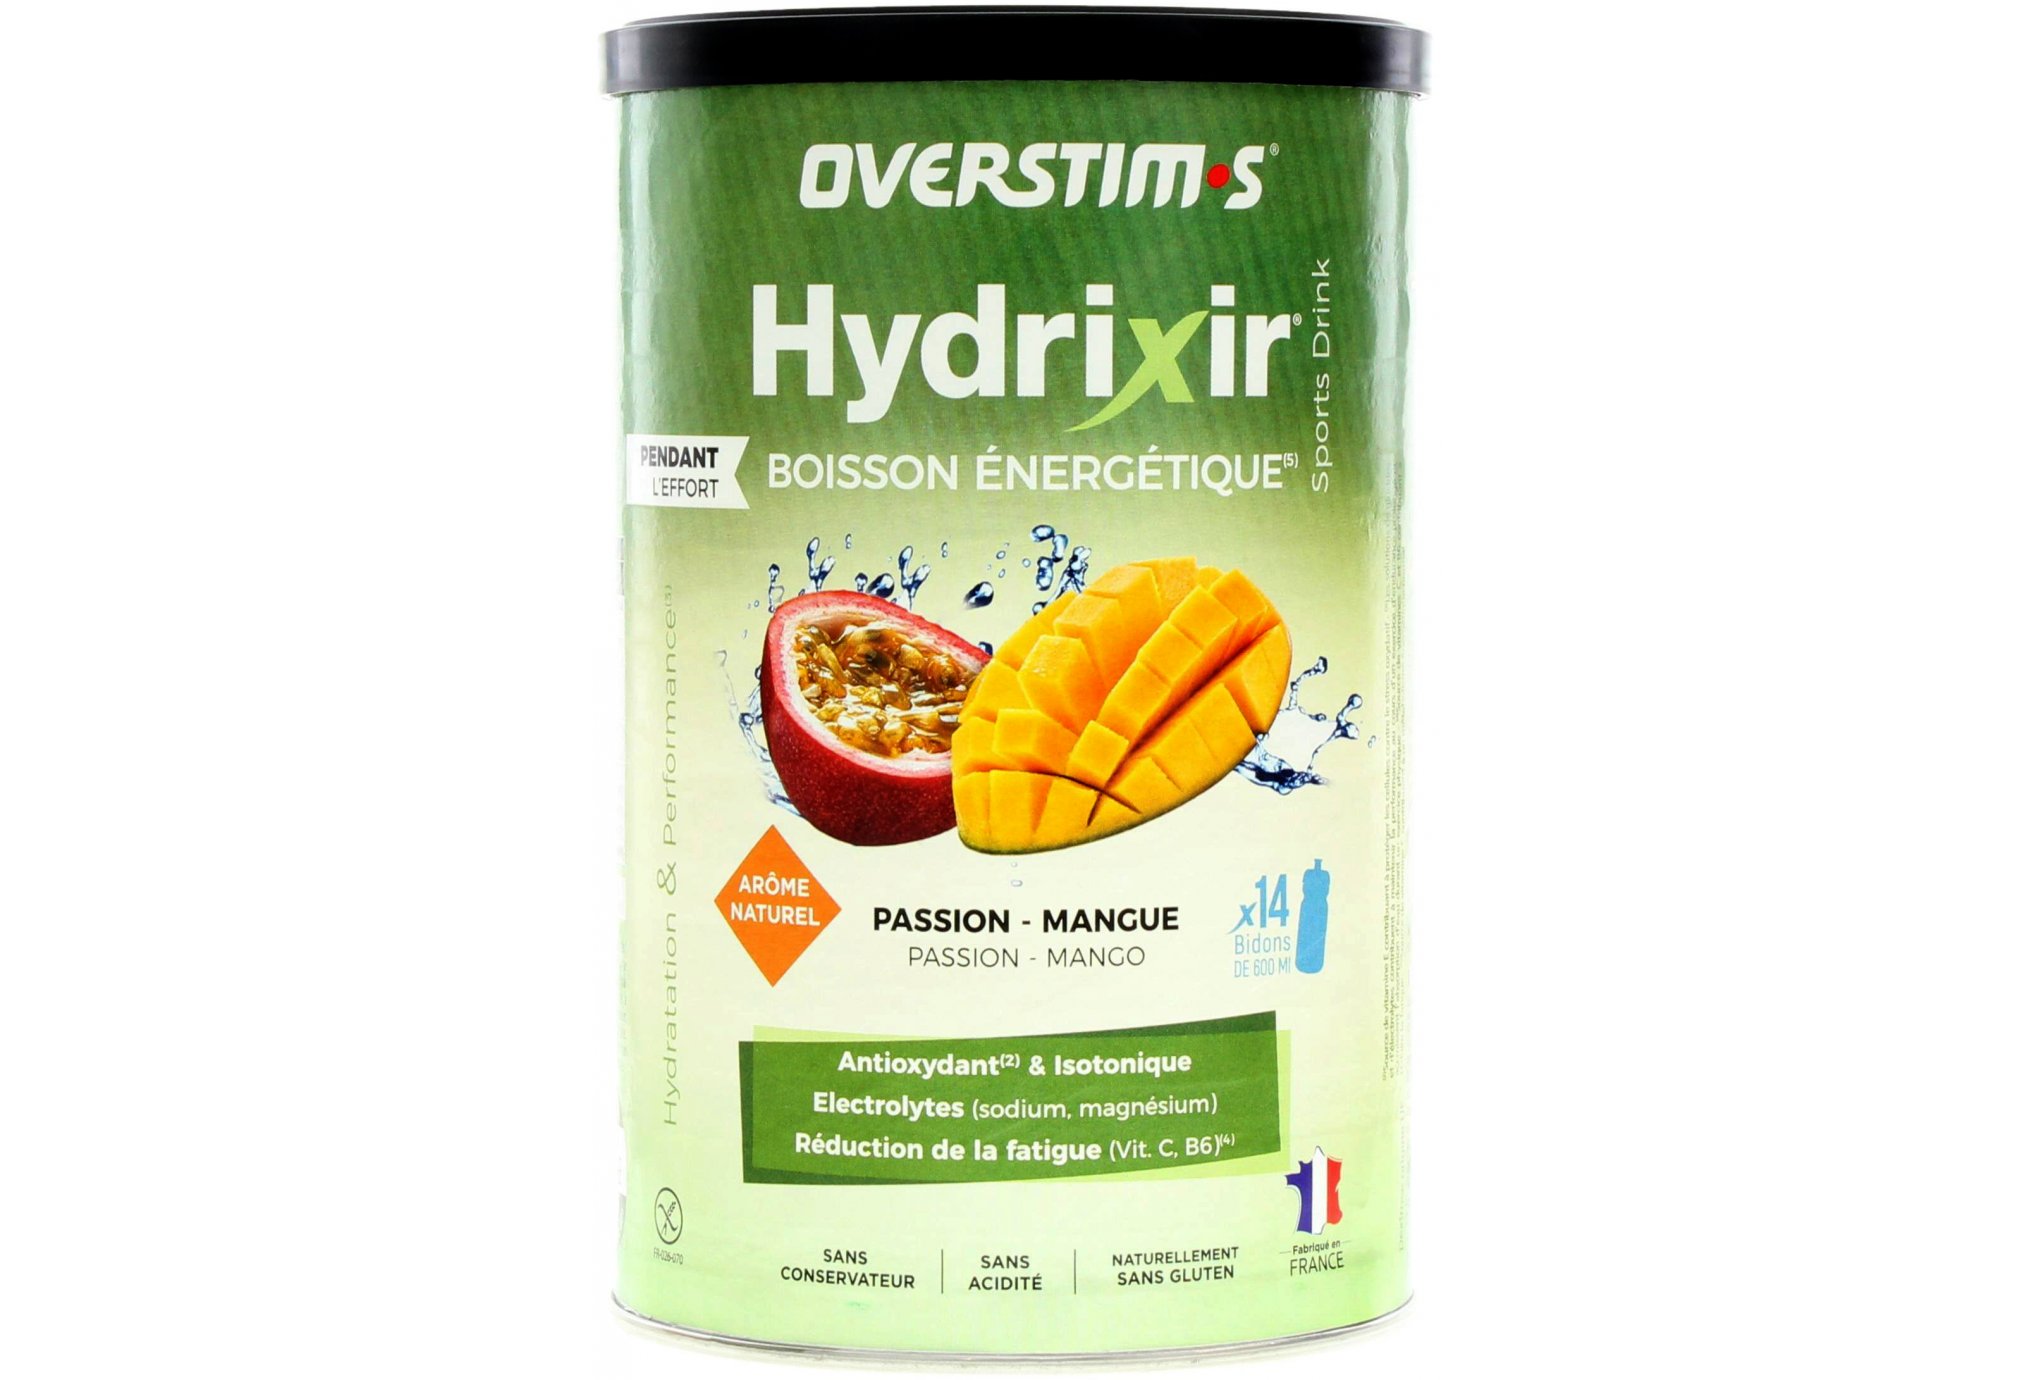 OVERSTIMS Hydrixir 600g - Passion mangue Diététique Boissons